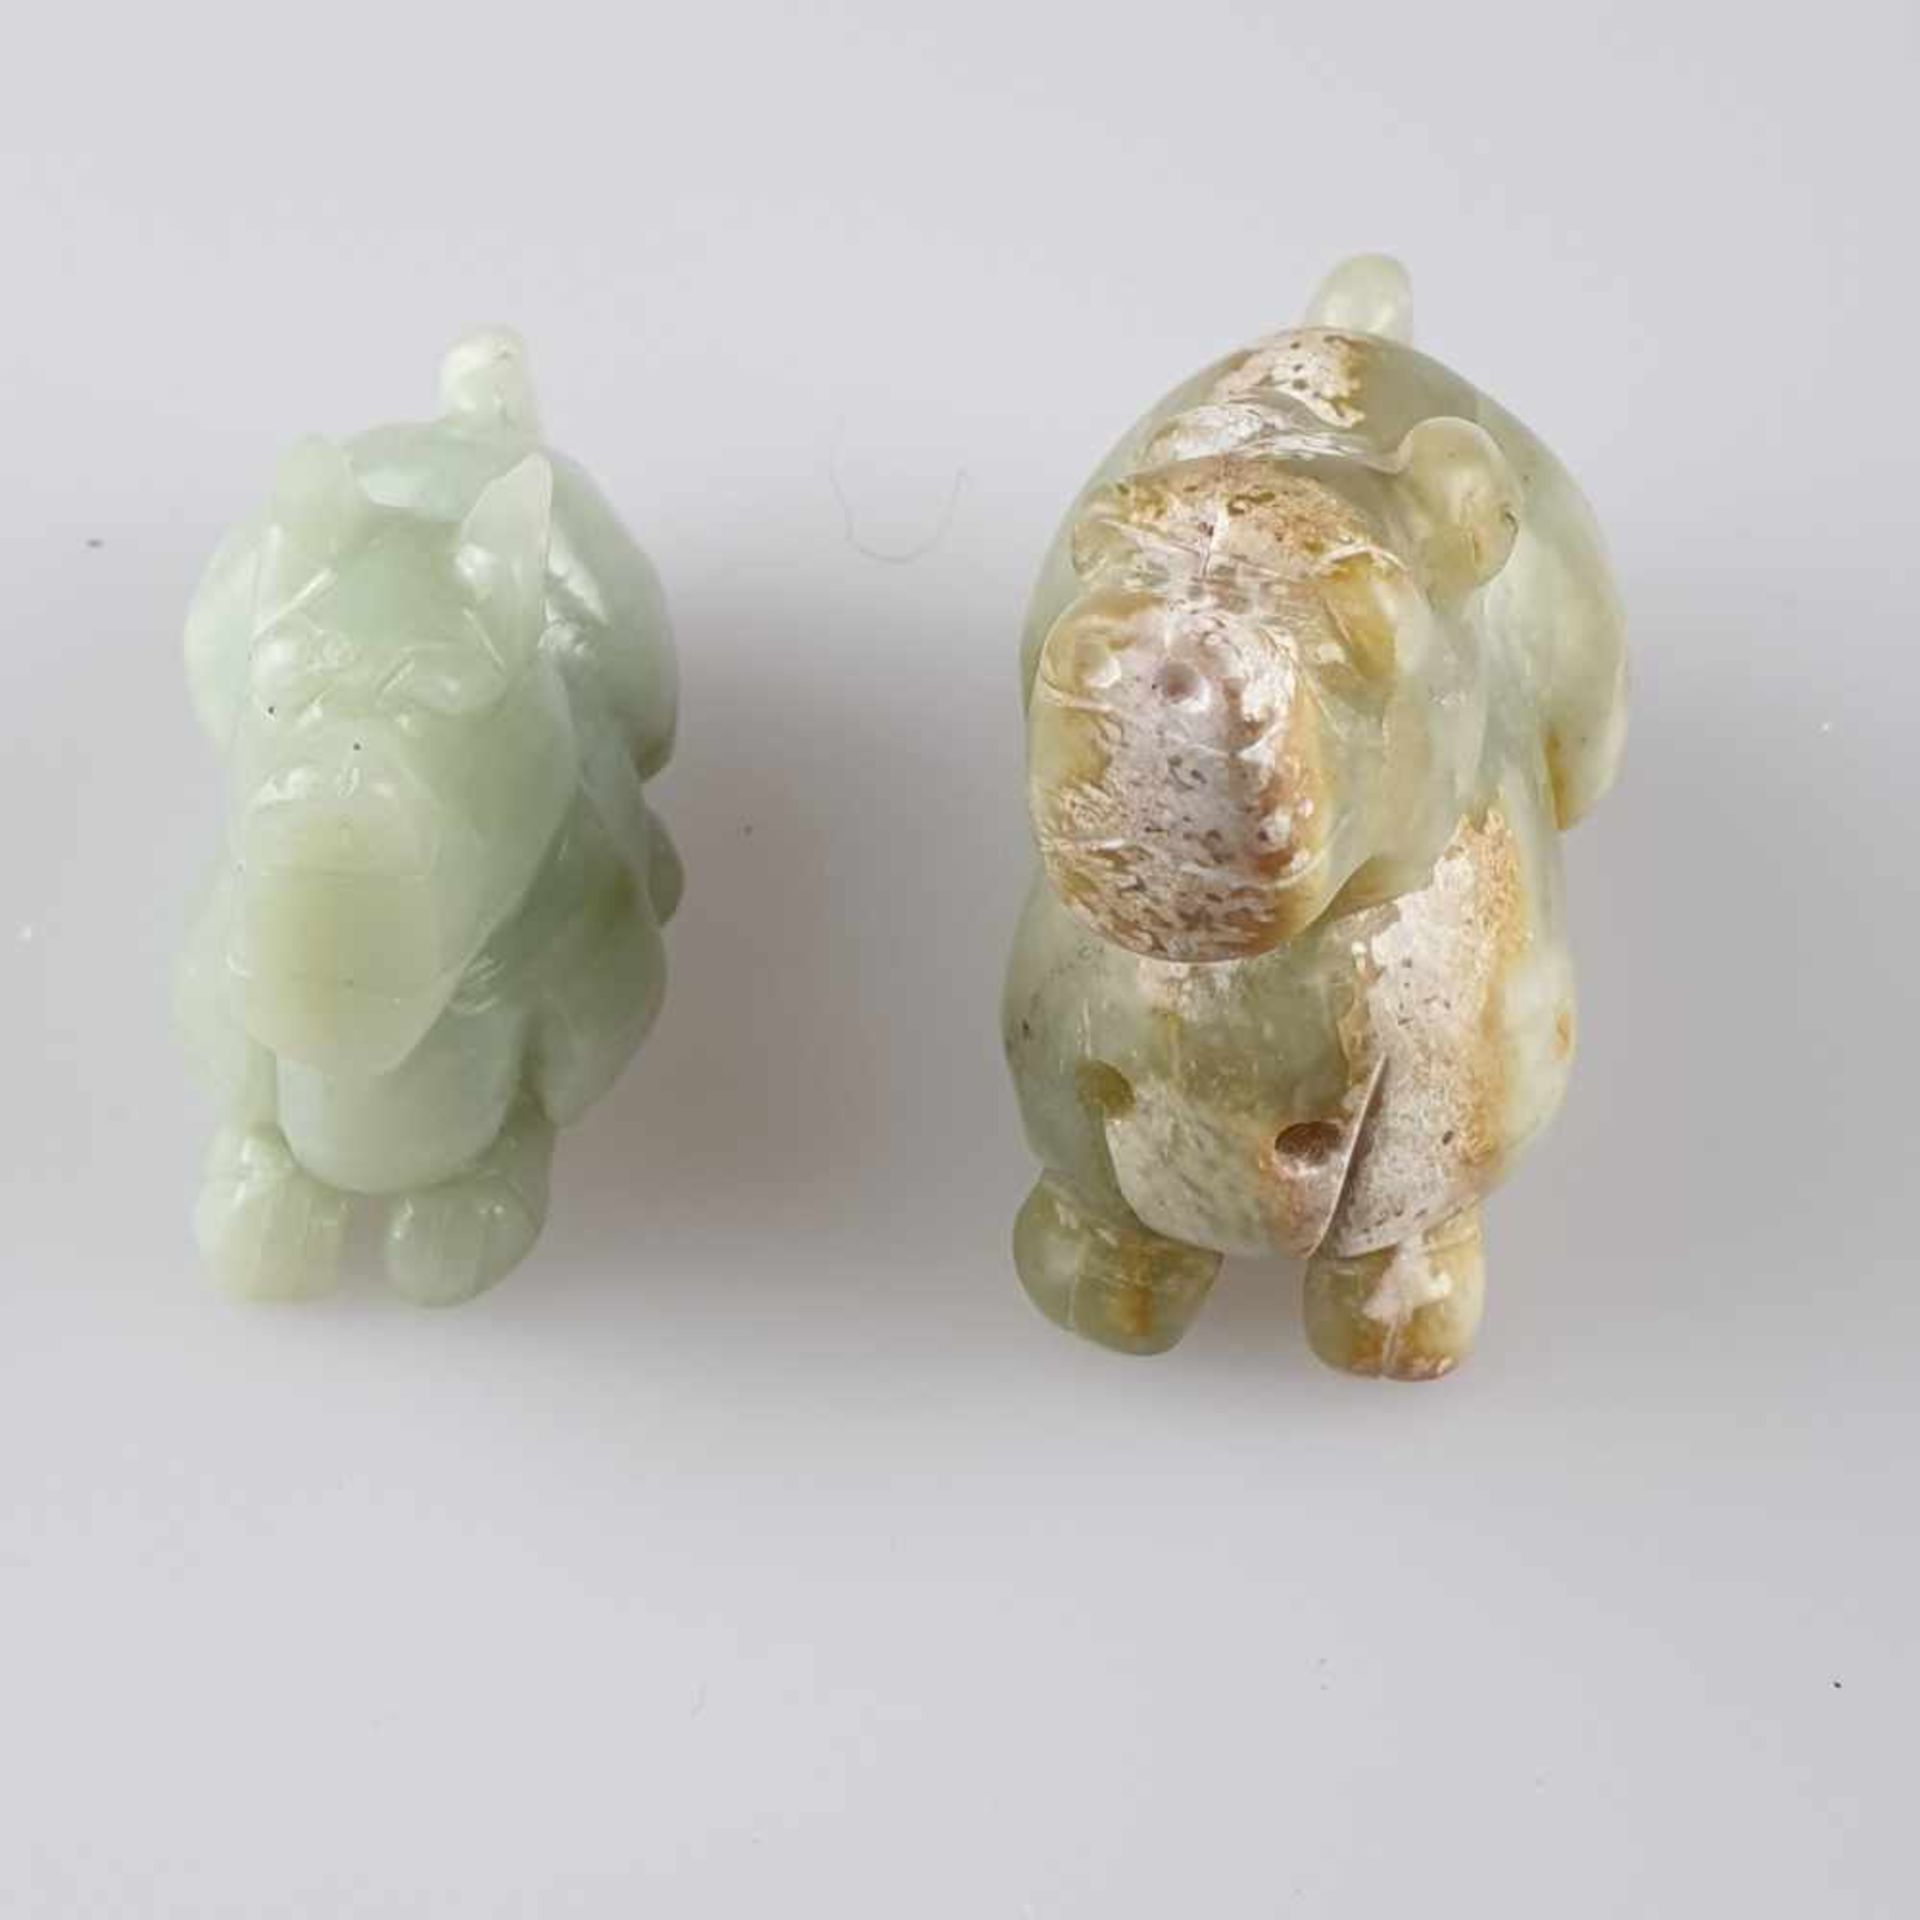 Zwei Miniatur-Fo-Hunde/Chi Tiger - China, vollrunde Schnitzereien aus Onyx, geschliffen und glänzend - Image 2 of 9